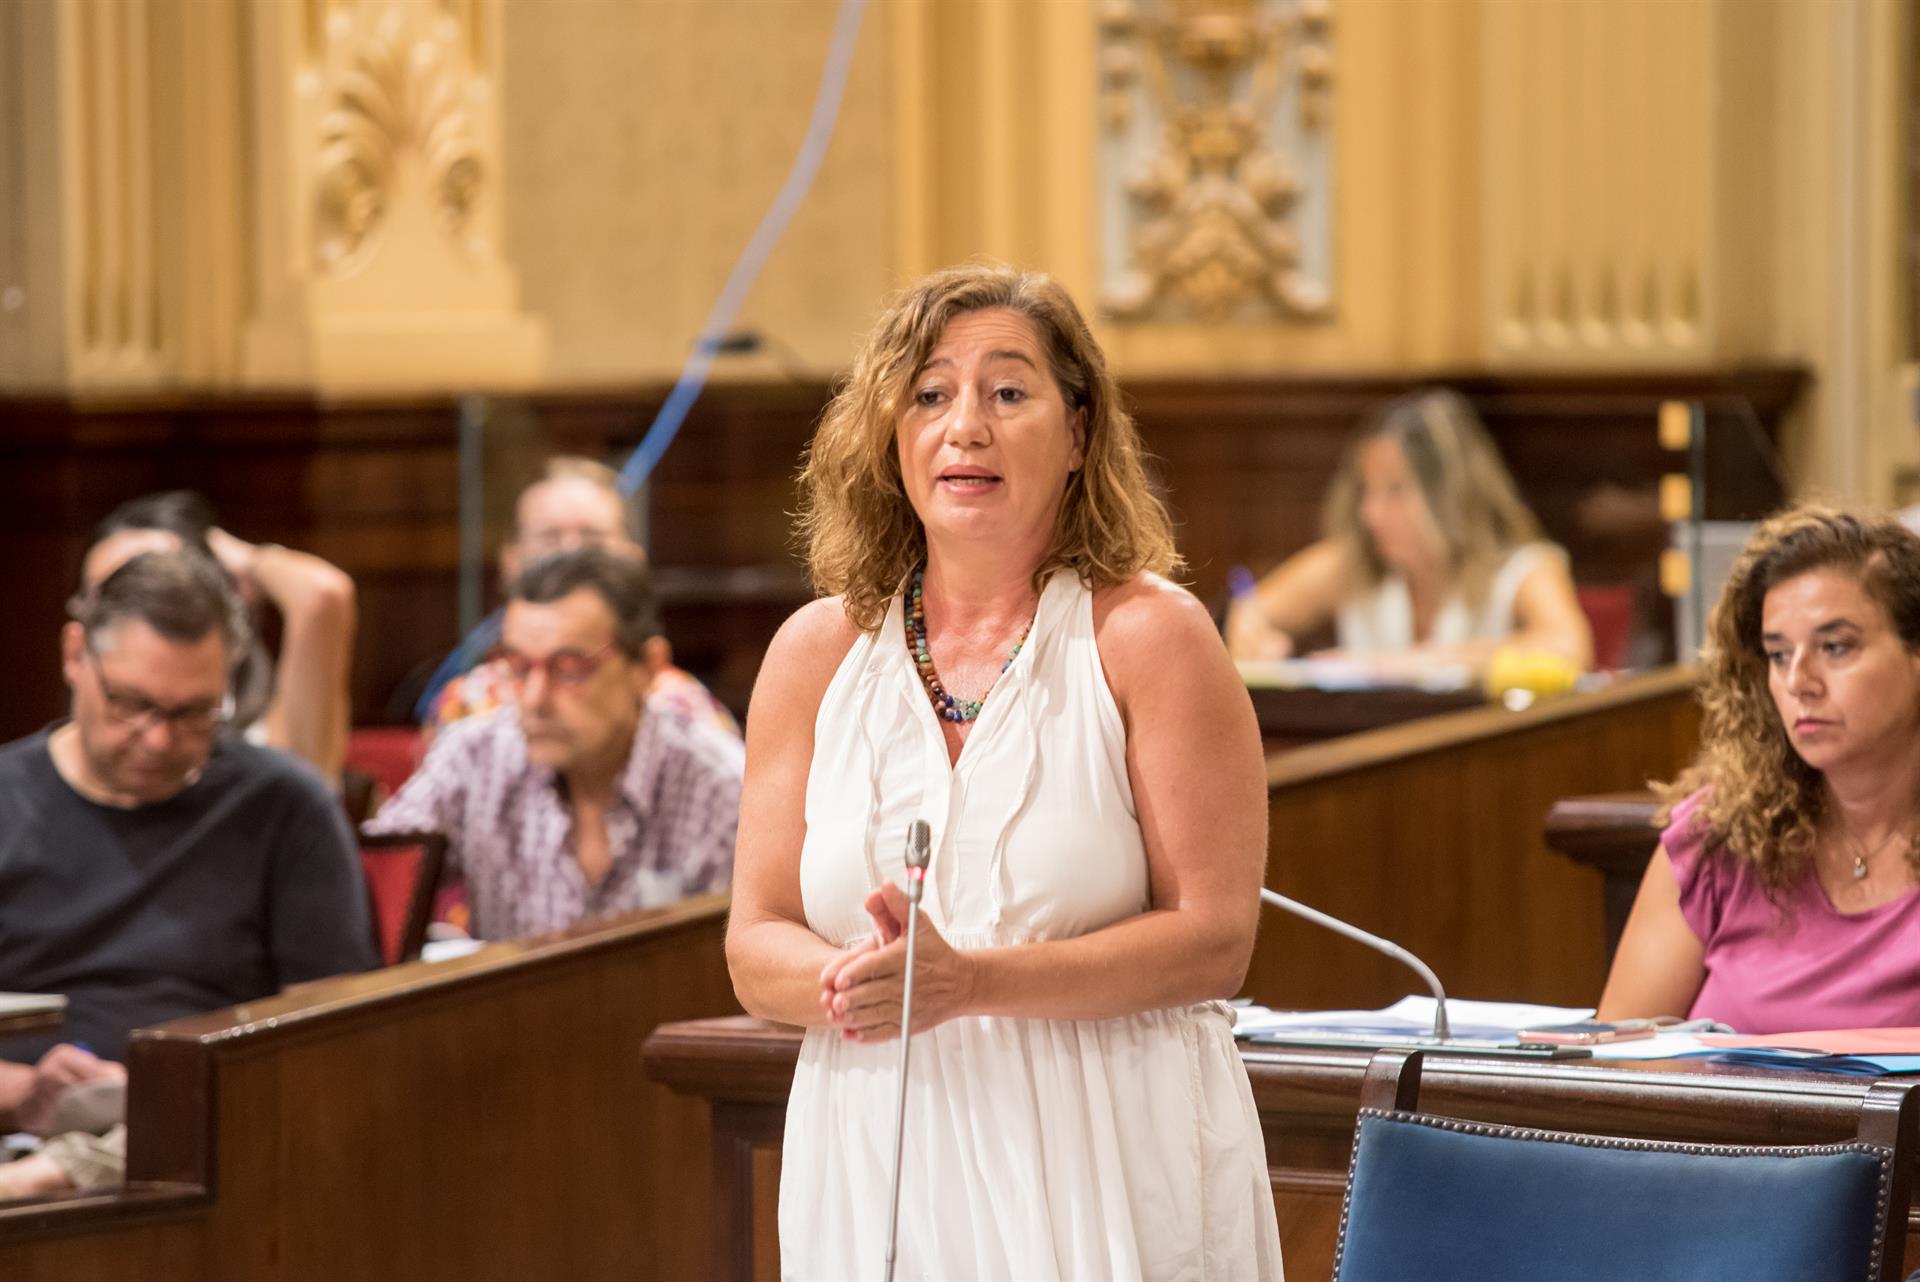 La presidenta del Gobierno Balear, Francina Armengol, durante su intervención en el pleno del Parlament balear. EFE/ Atienza